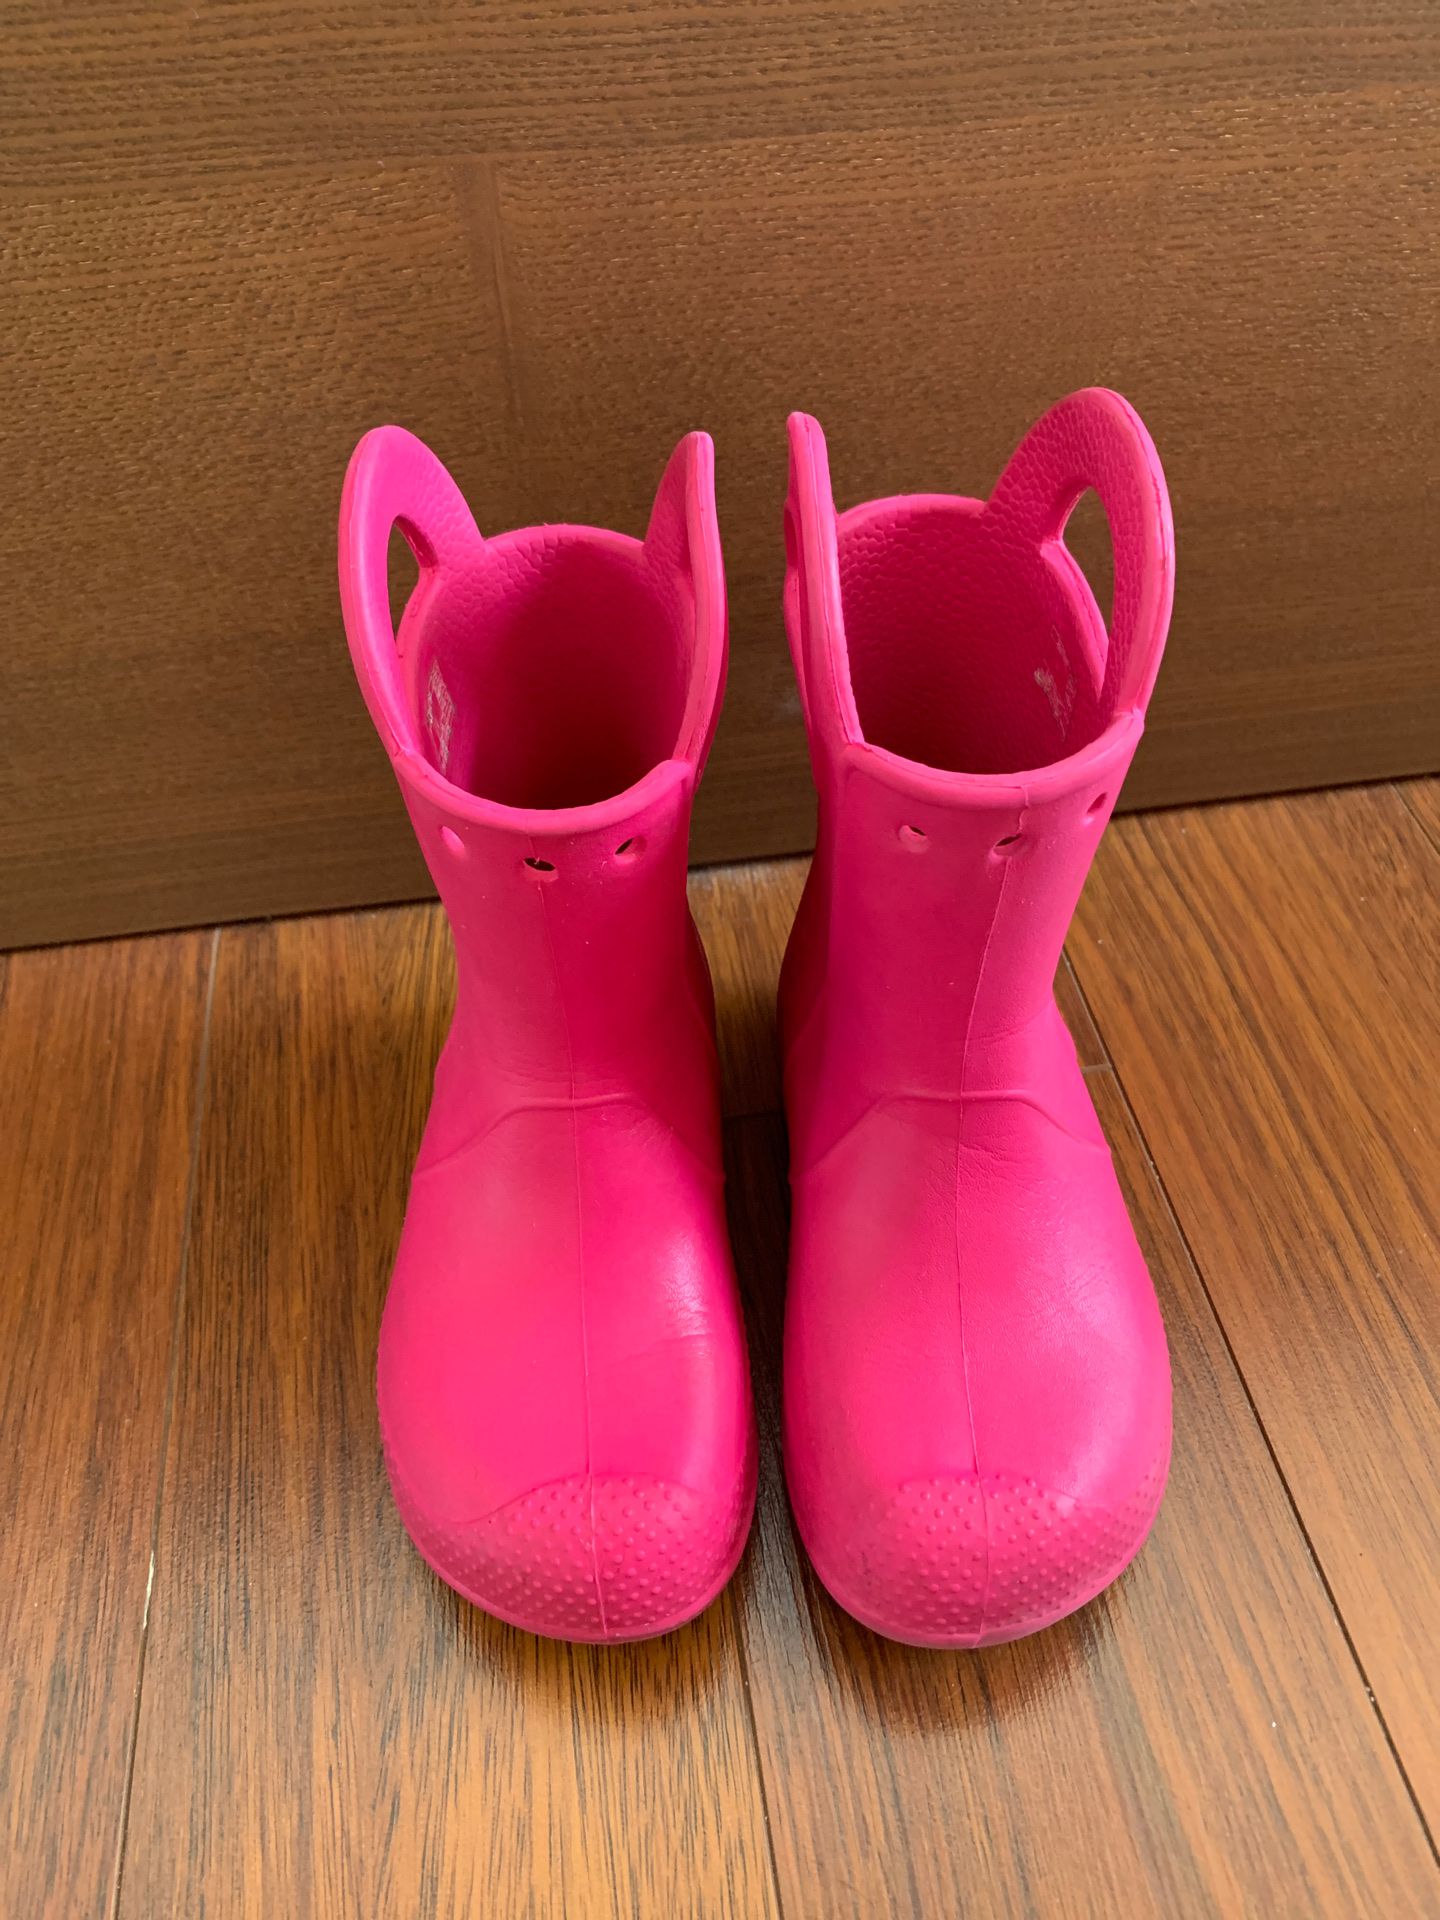 Crocs rain boots size 11